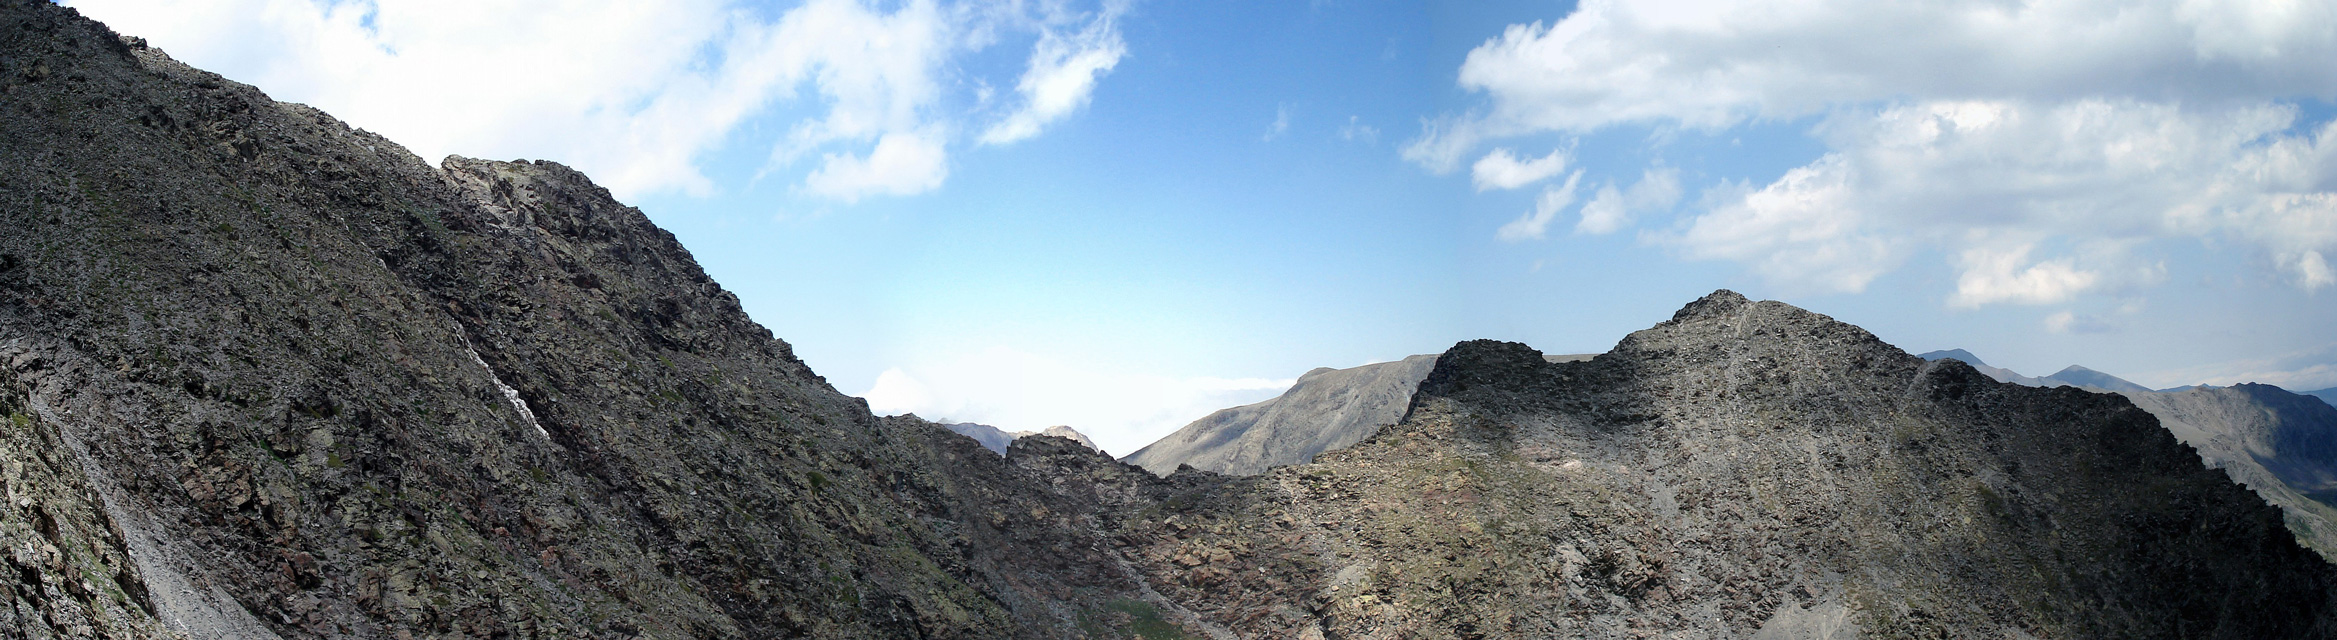 Subida desde el Carlit de Baix (2806 m) hacia el Carlit (2921 m)